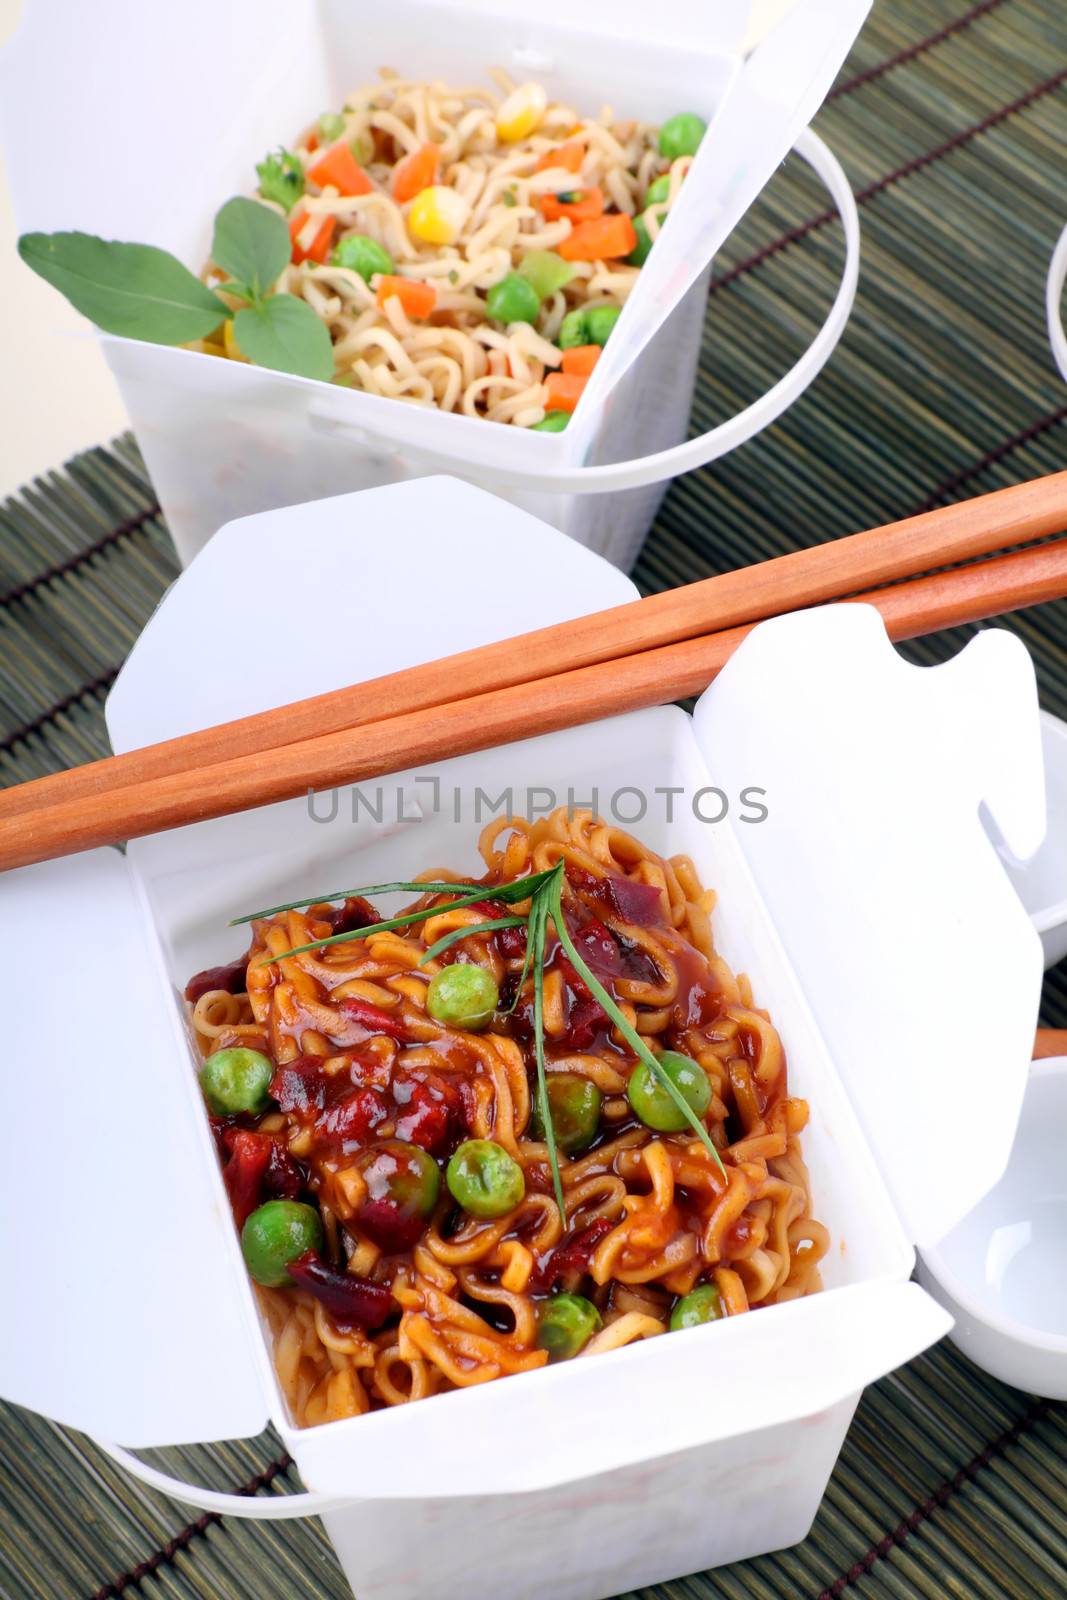 Take Out Noodles by jabiru